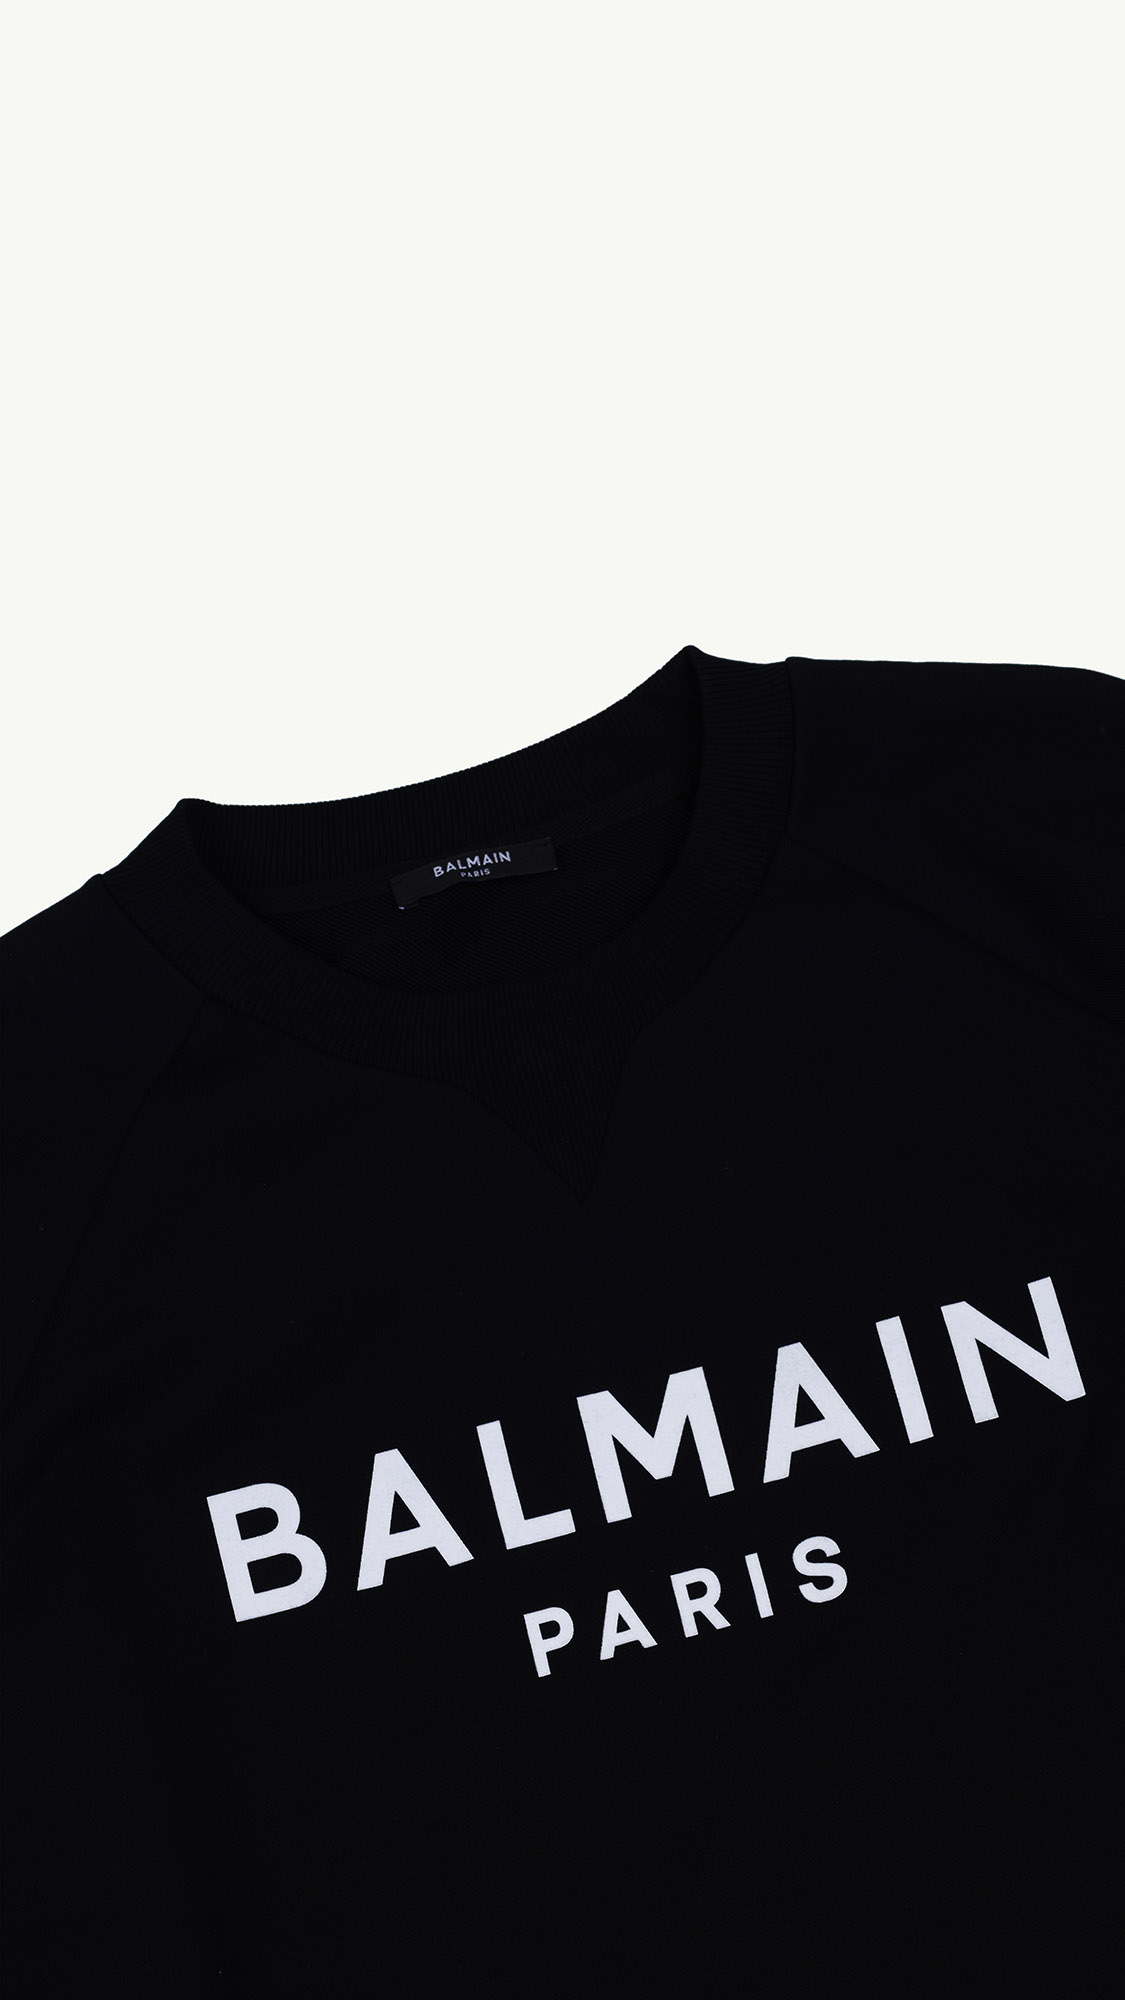 BALMAIN Women Balmain Paris Logo Sweatshirt in Black/White 2